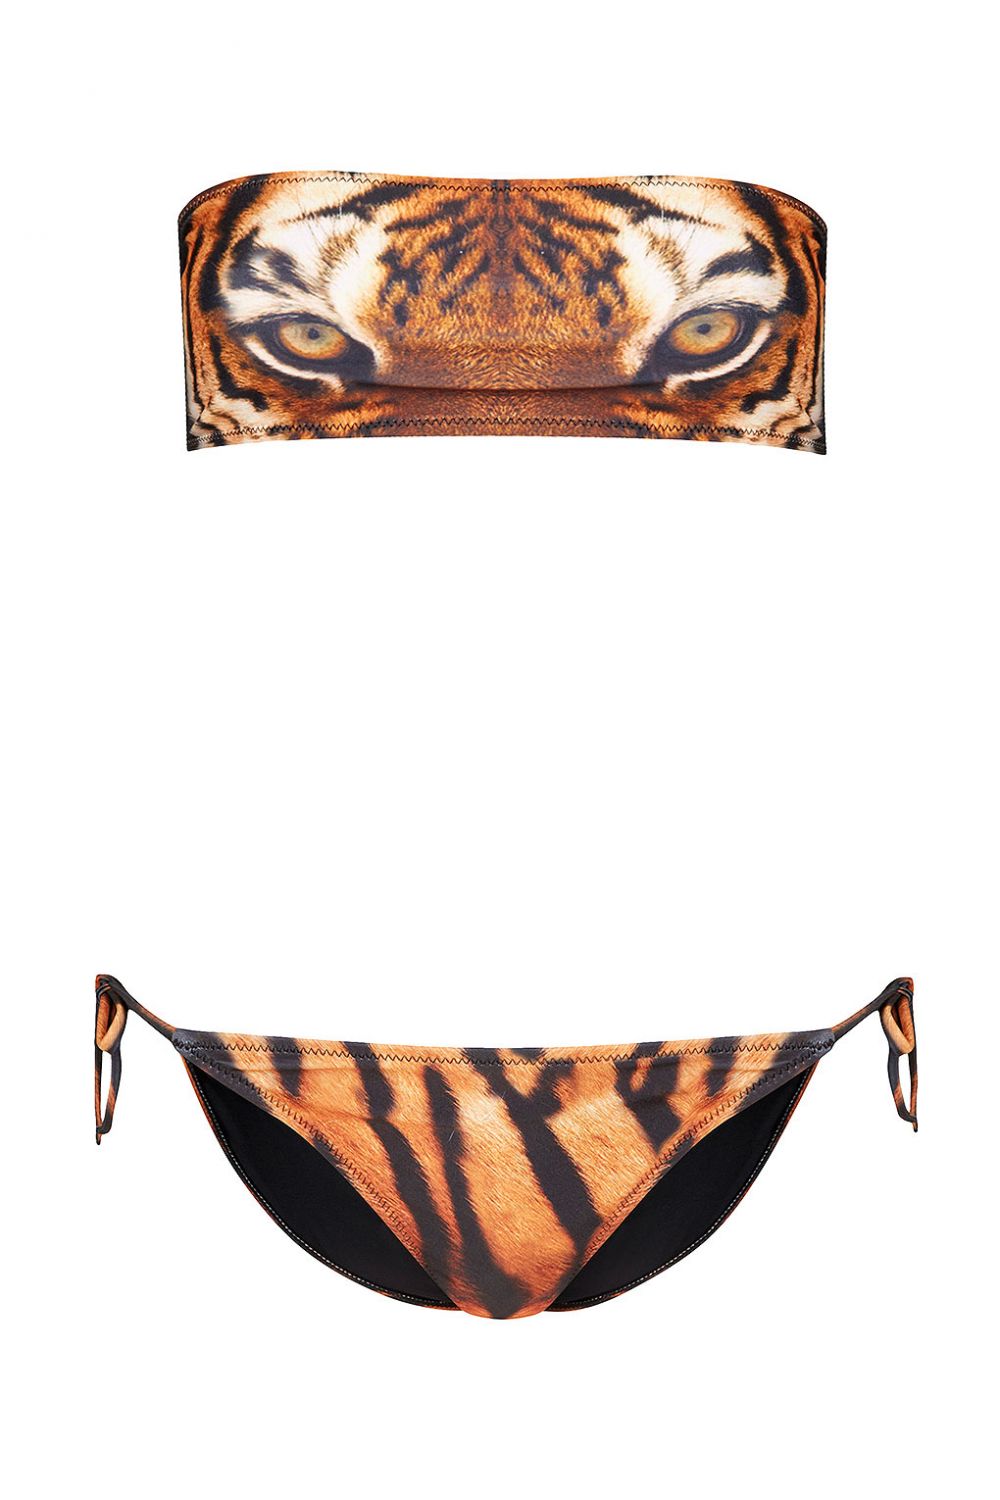 Bikini bandeau motif tête de tigre, Topshop, 42€
Un maillot rugissant pour ne pas passer inaperçue sur les plages de Calvi !